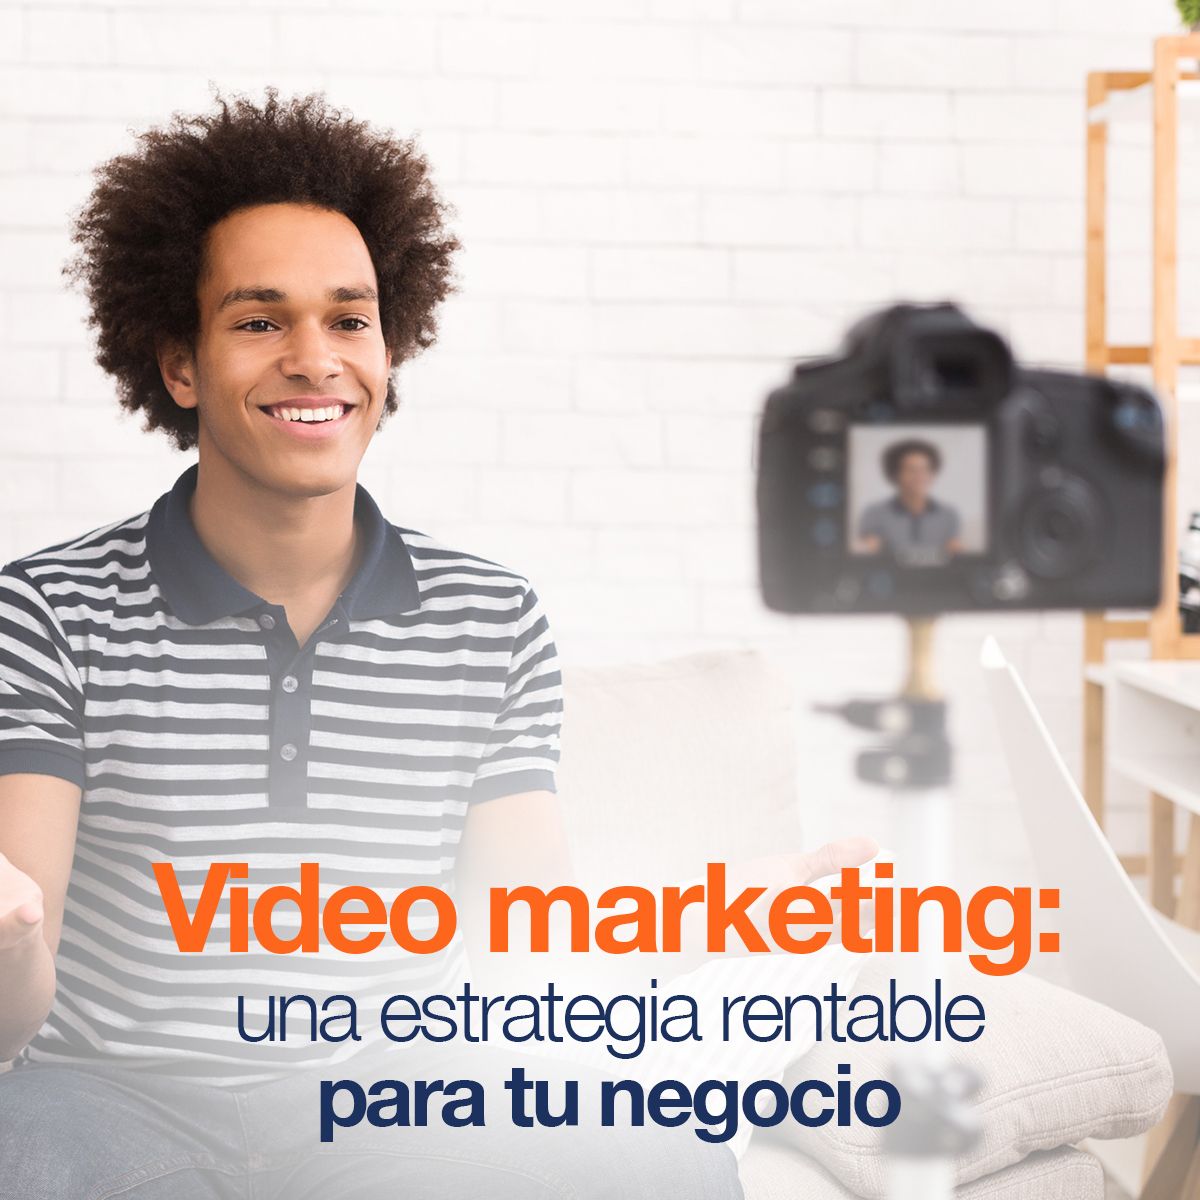 Video marketing: una estrategia rentable para tu negocio